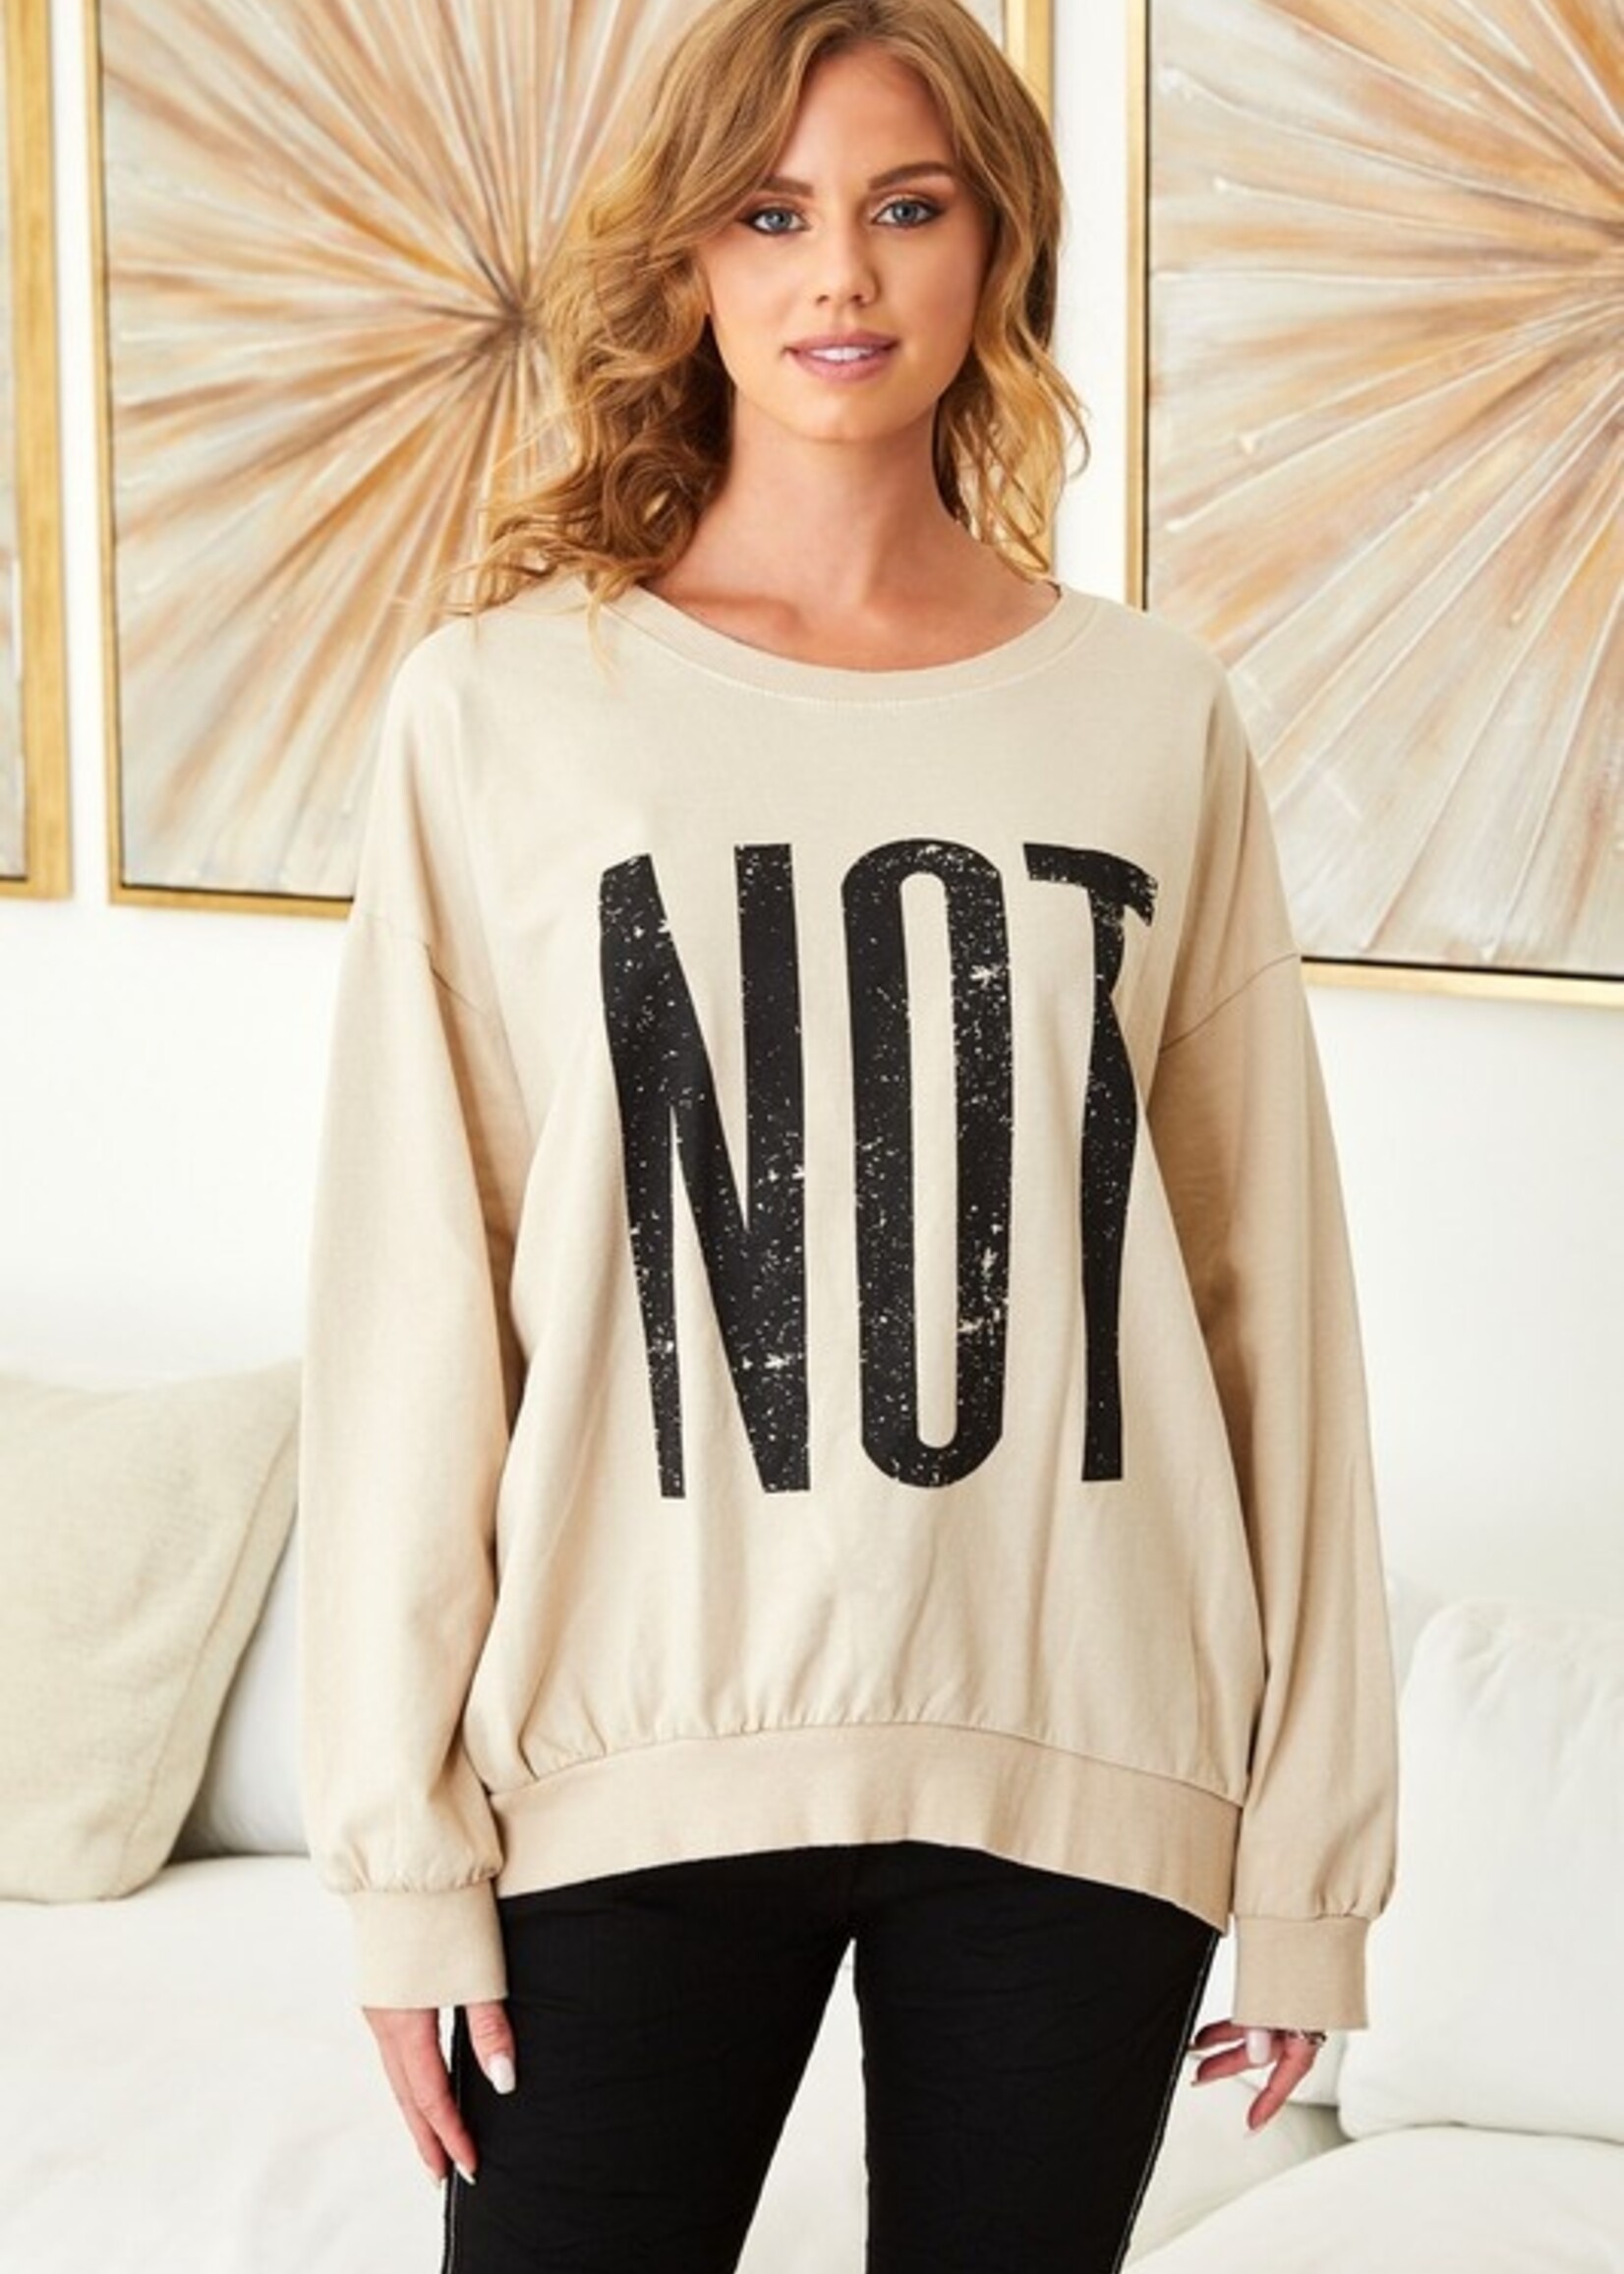 Not sweatshirt